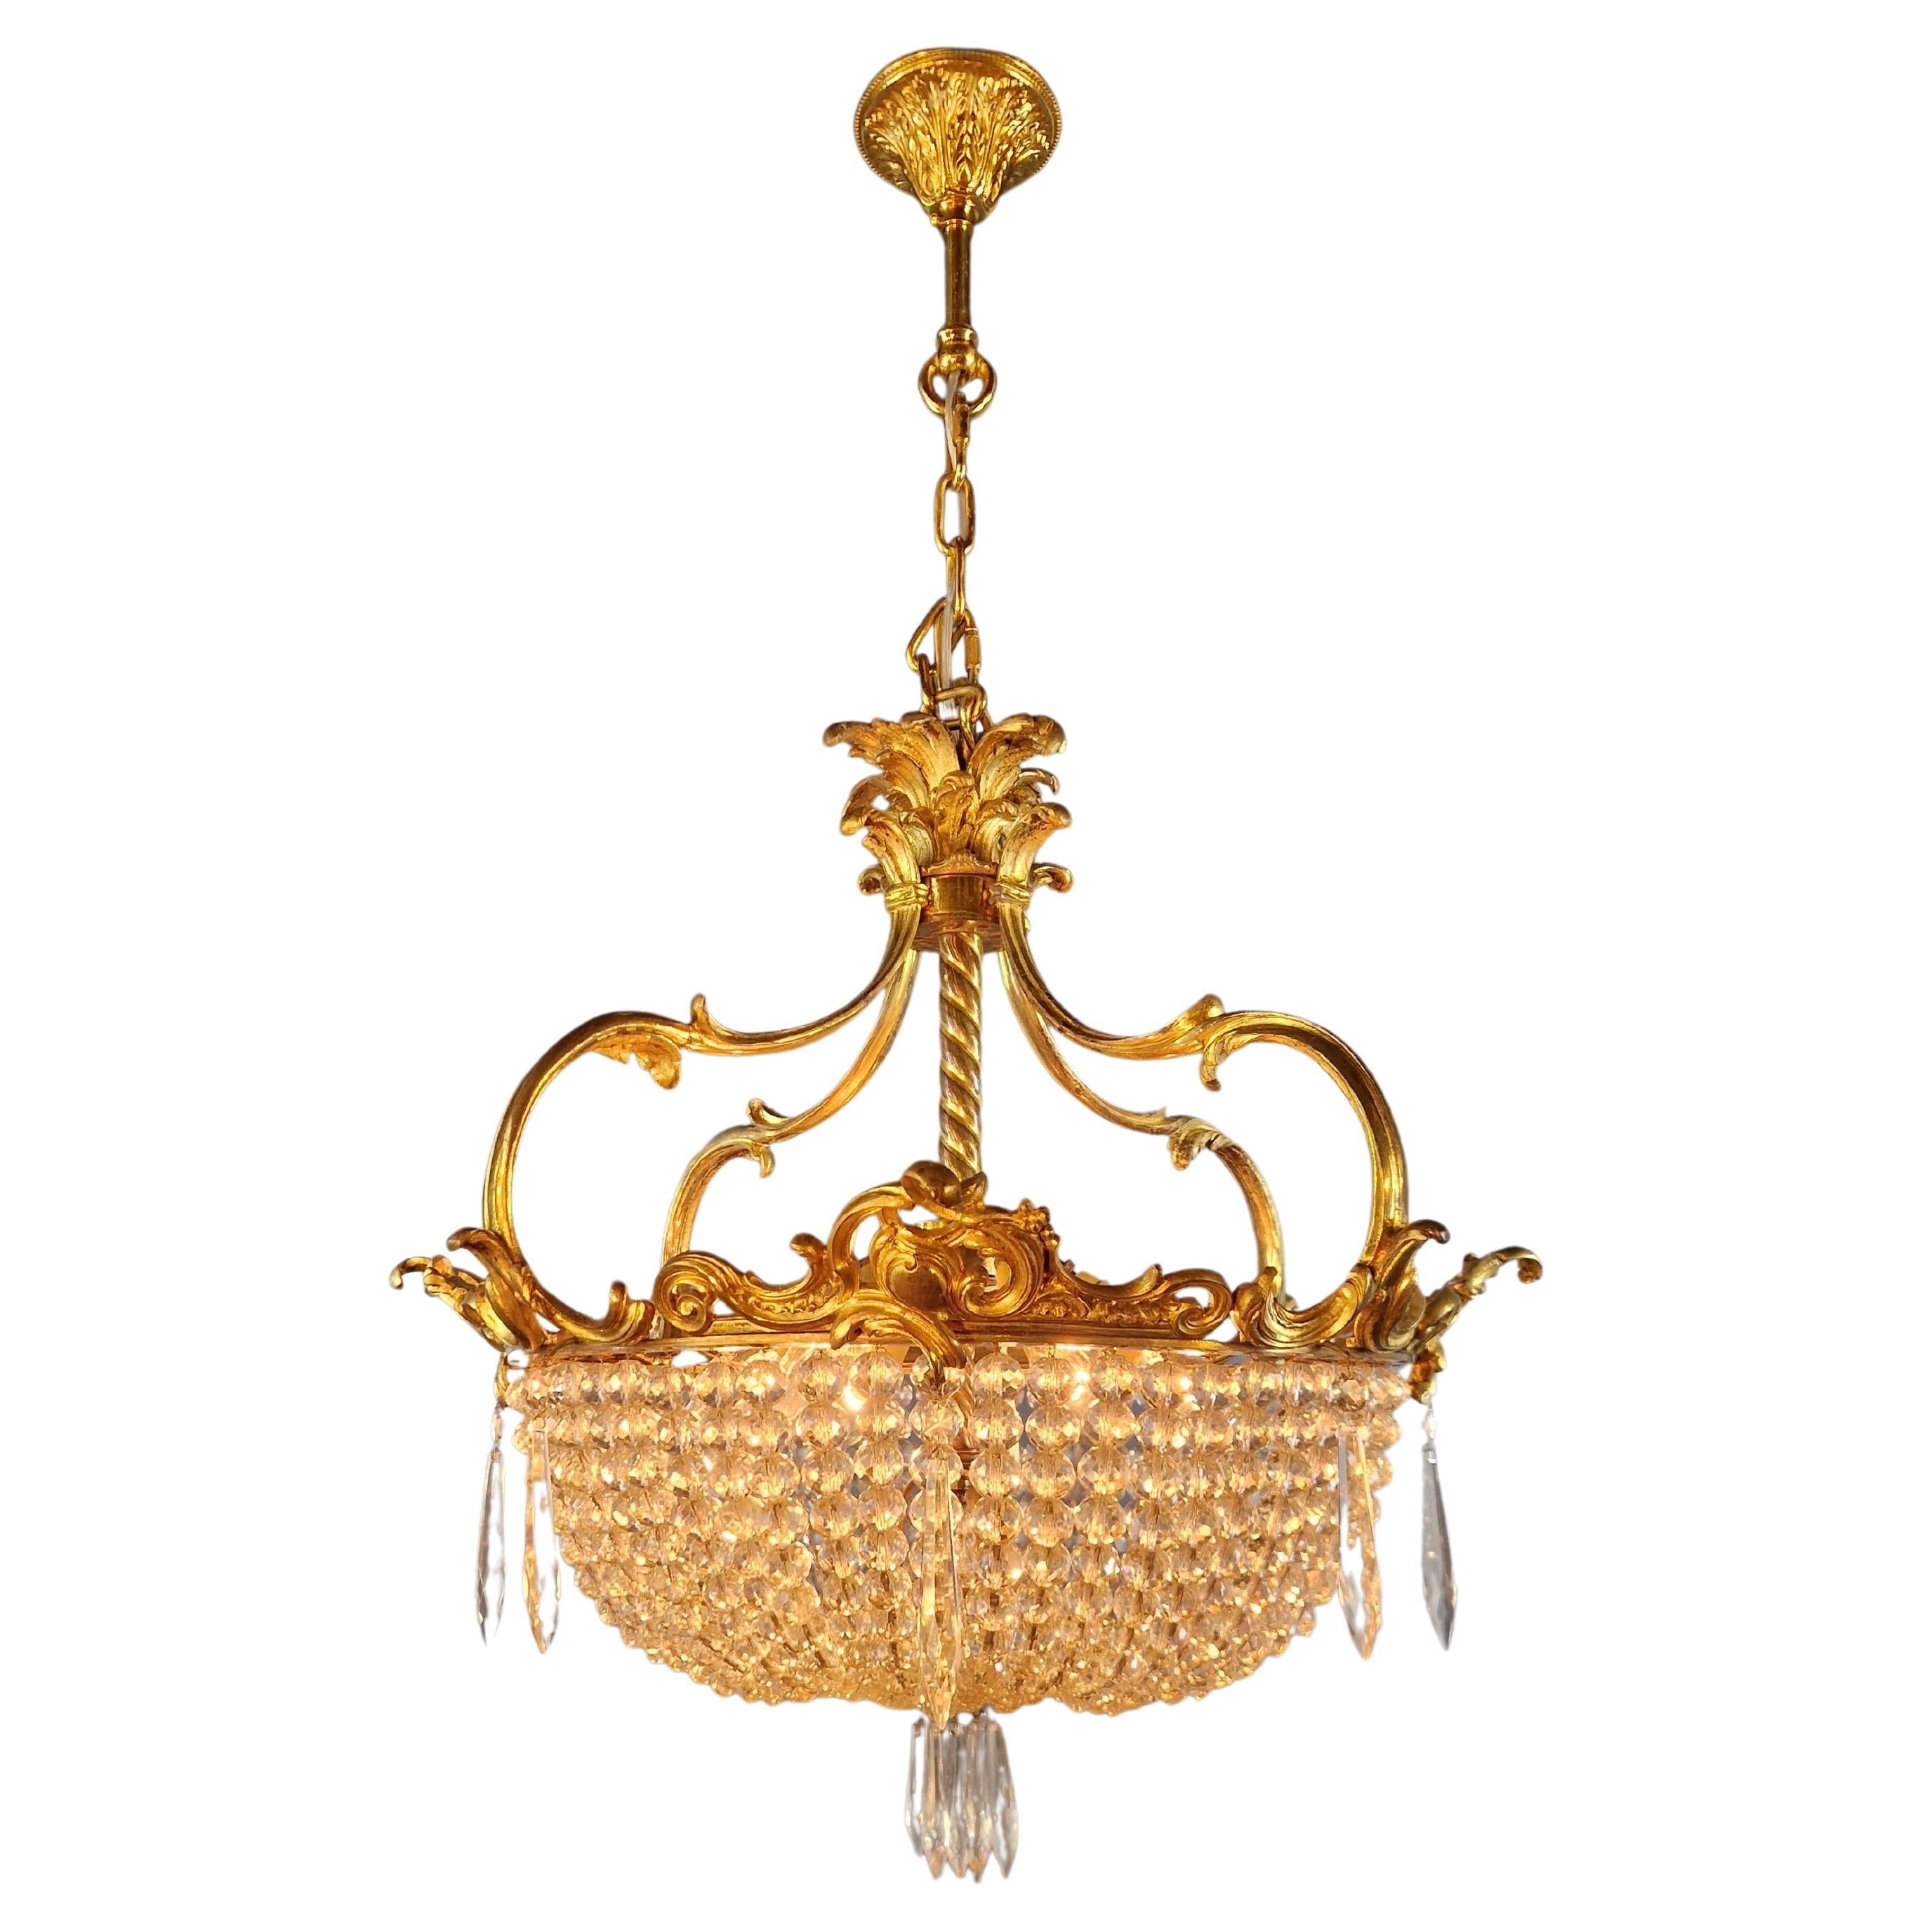 Art Nouveau Messing Kronleuchter Lüster Deckenlampe Rarität Antike